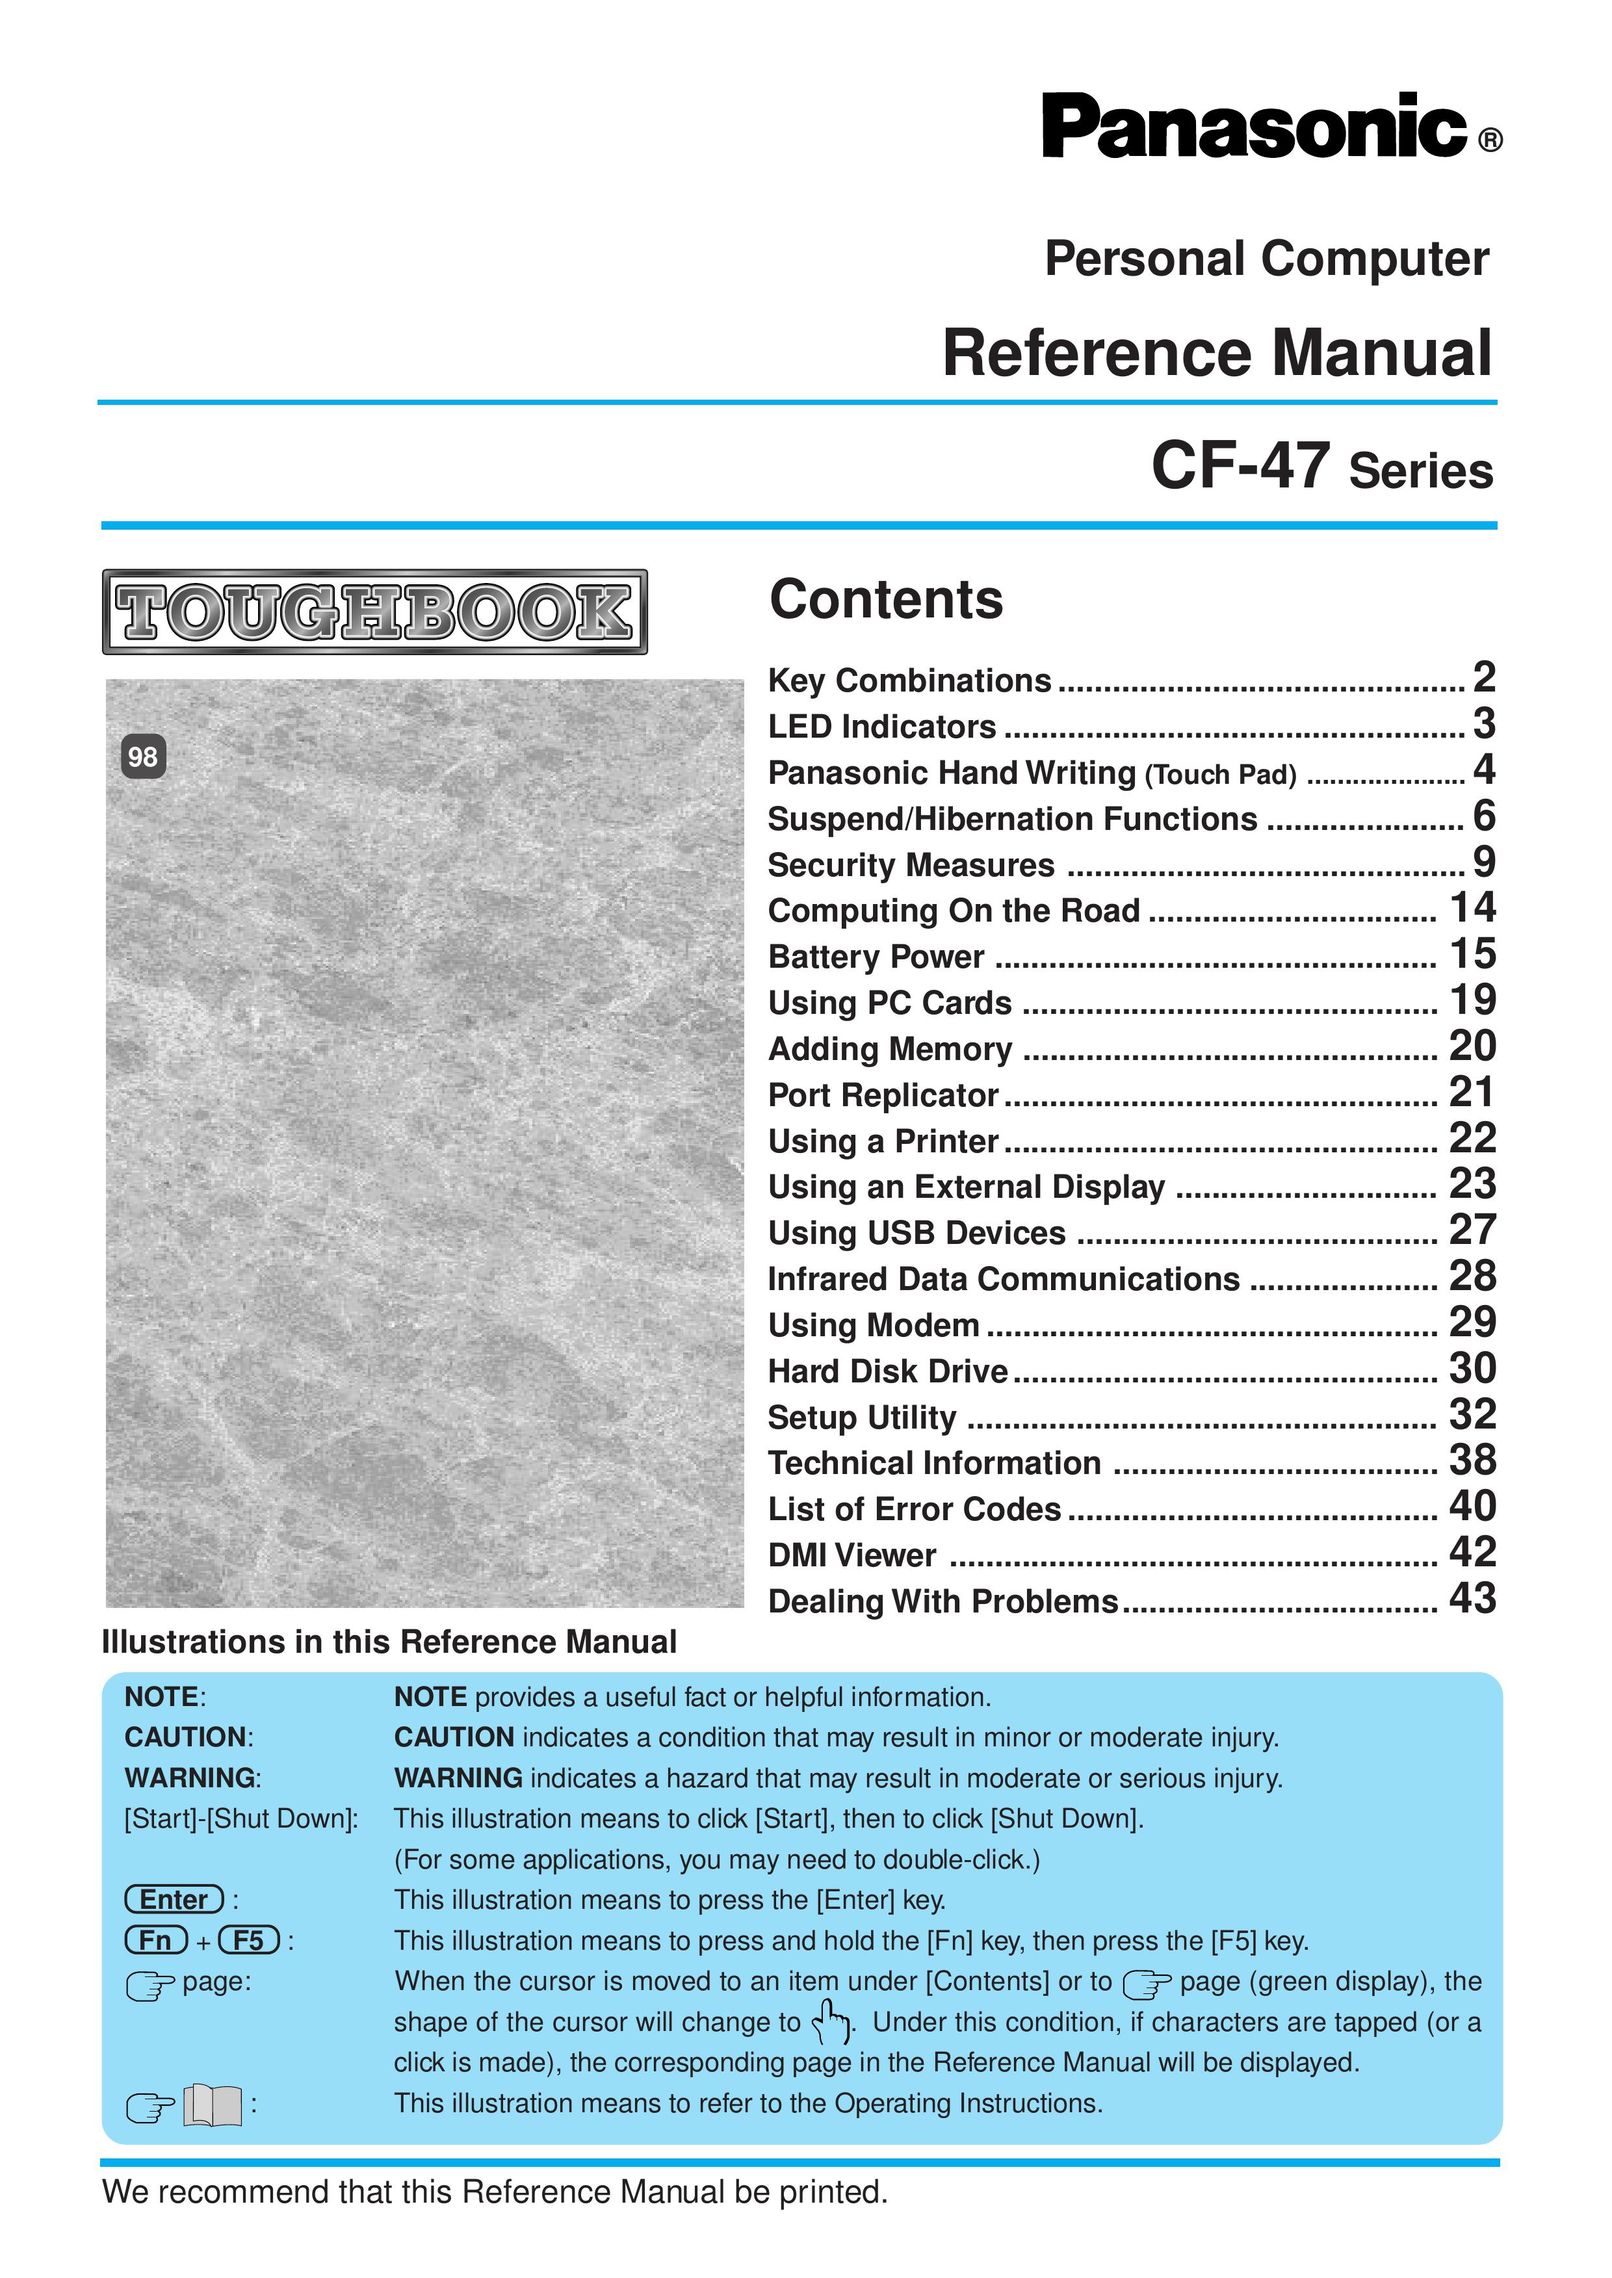 Panasonic CF-47 Personal Computer User Manual